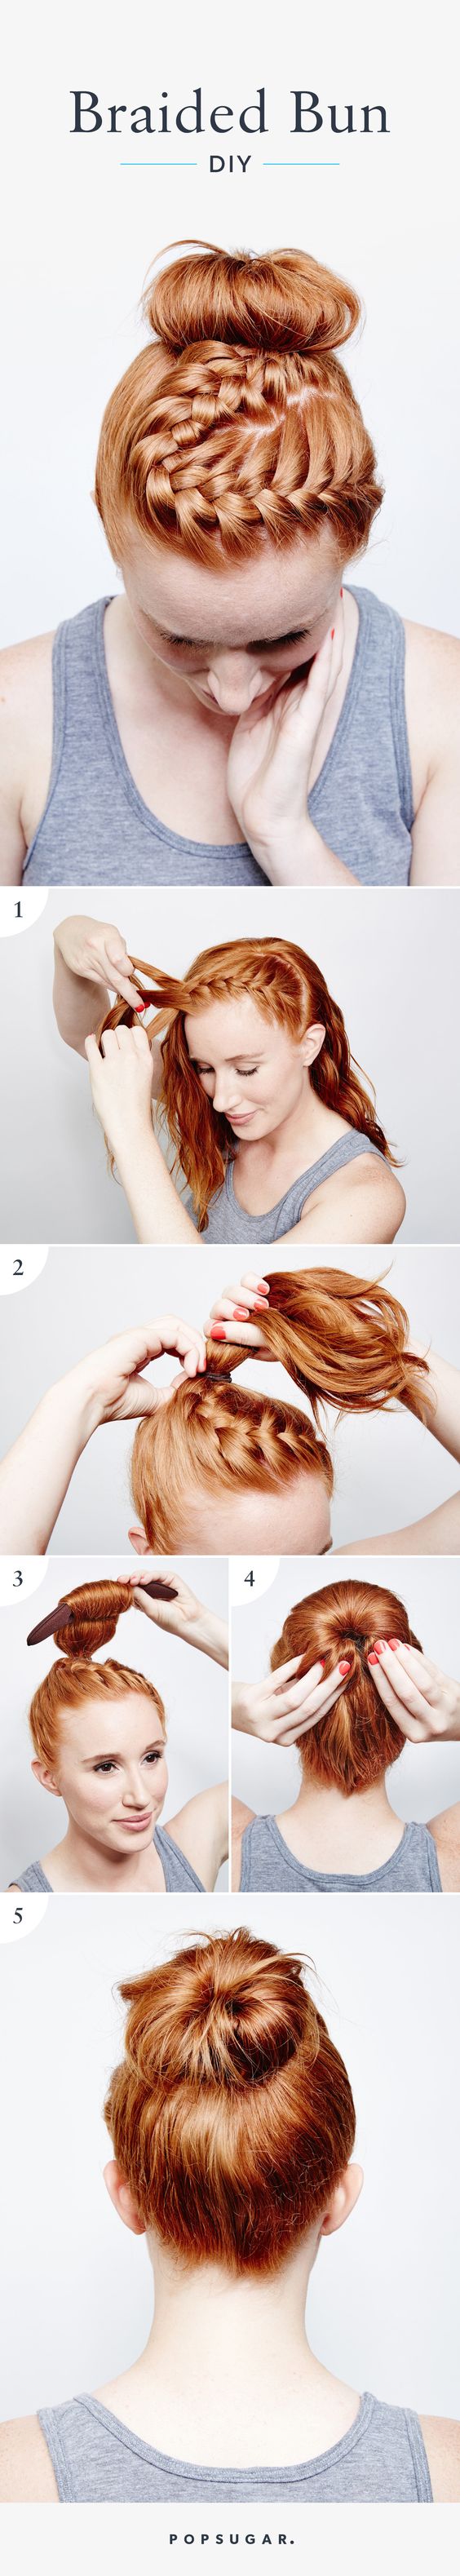 braided-top-bun-for-bright-hair via